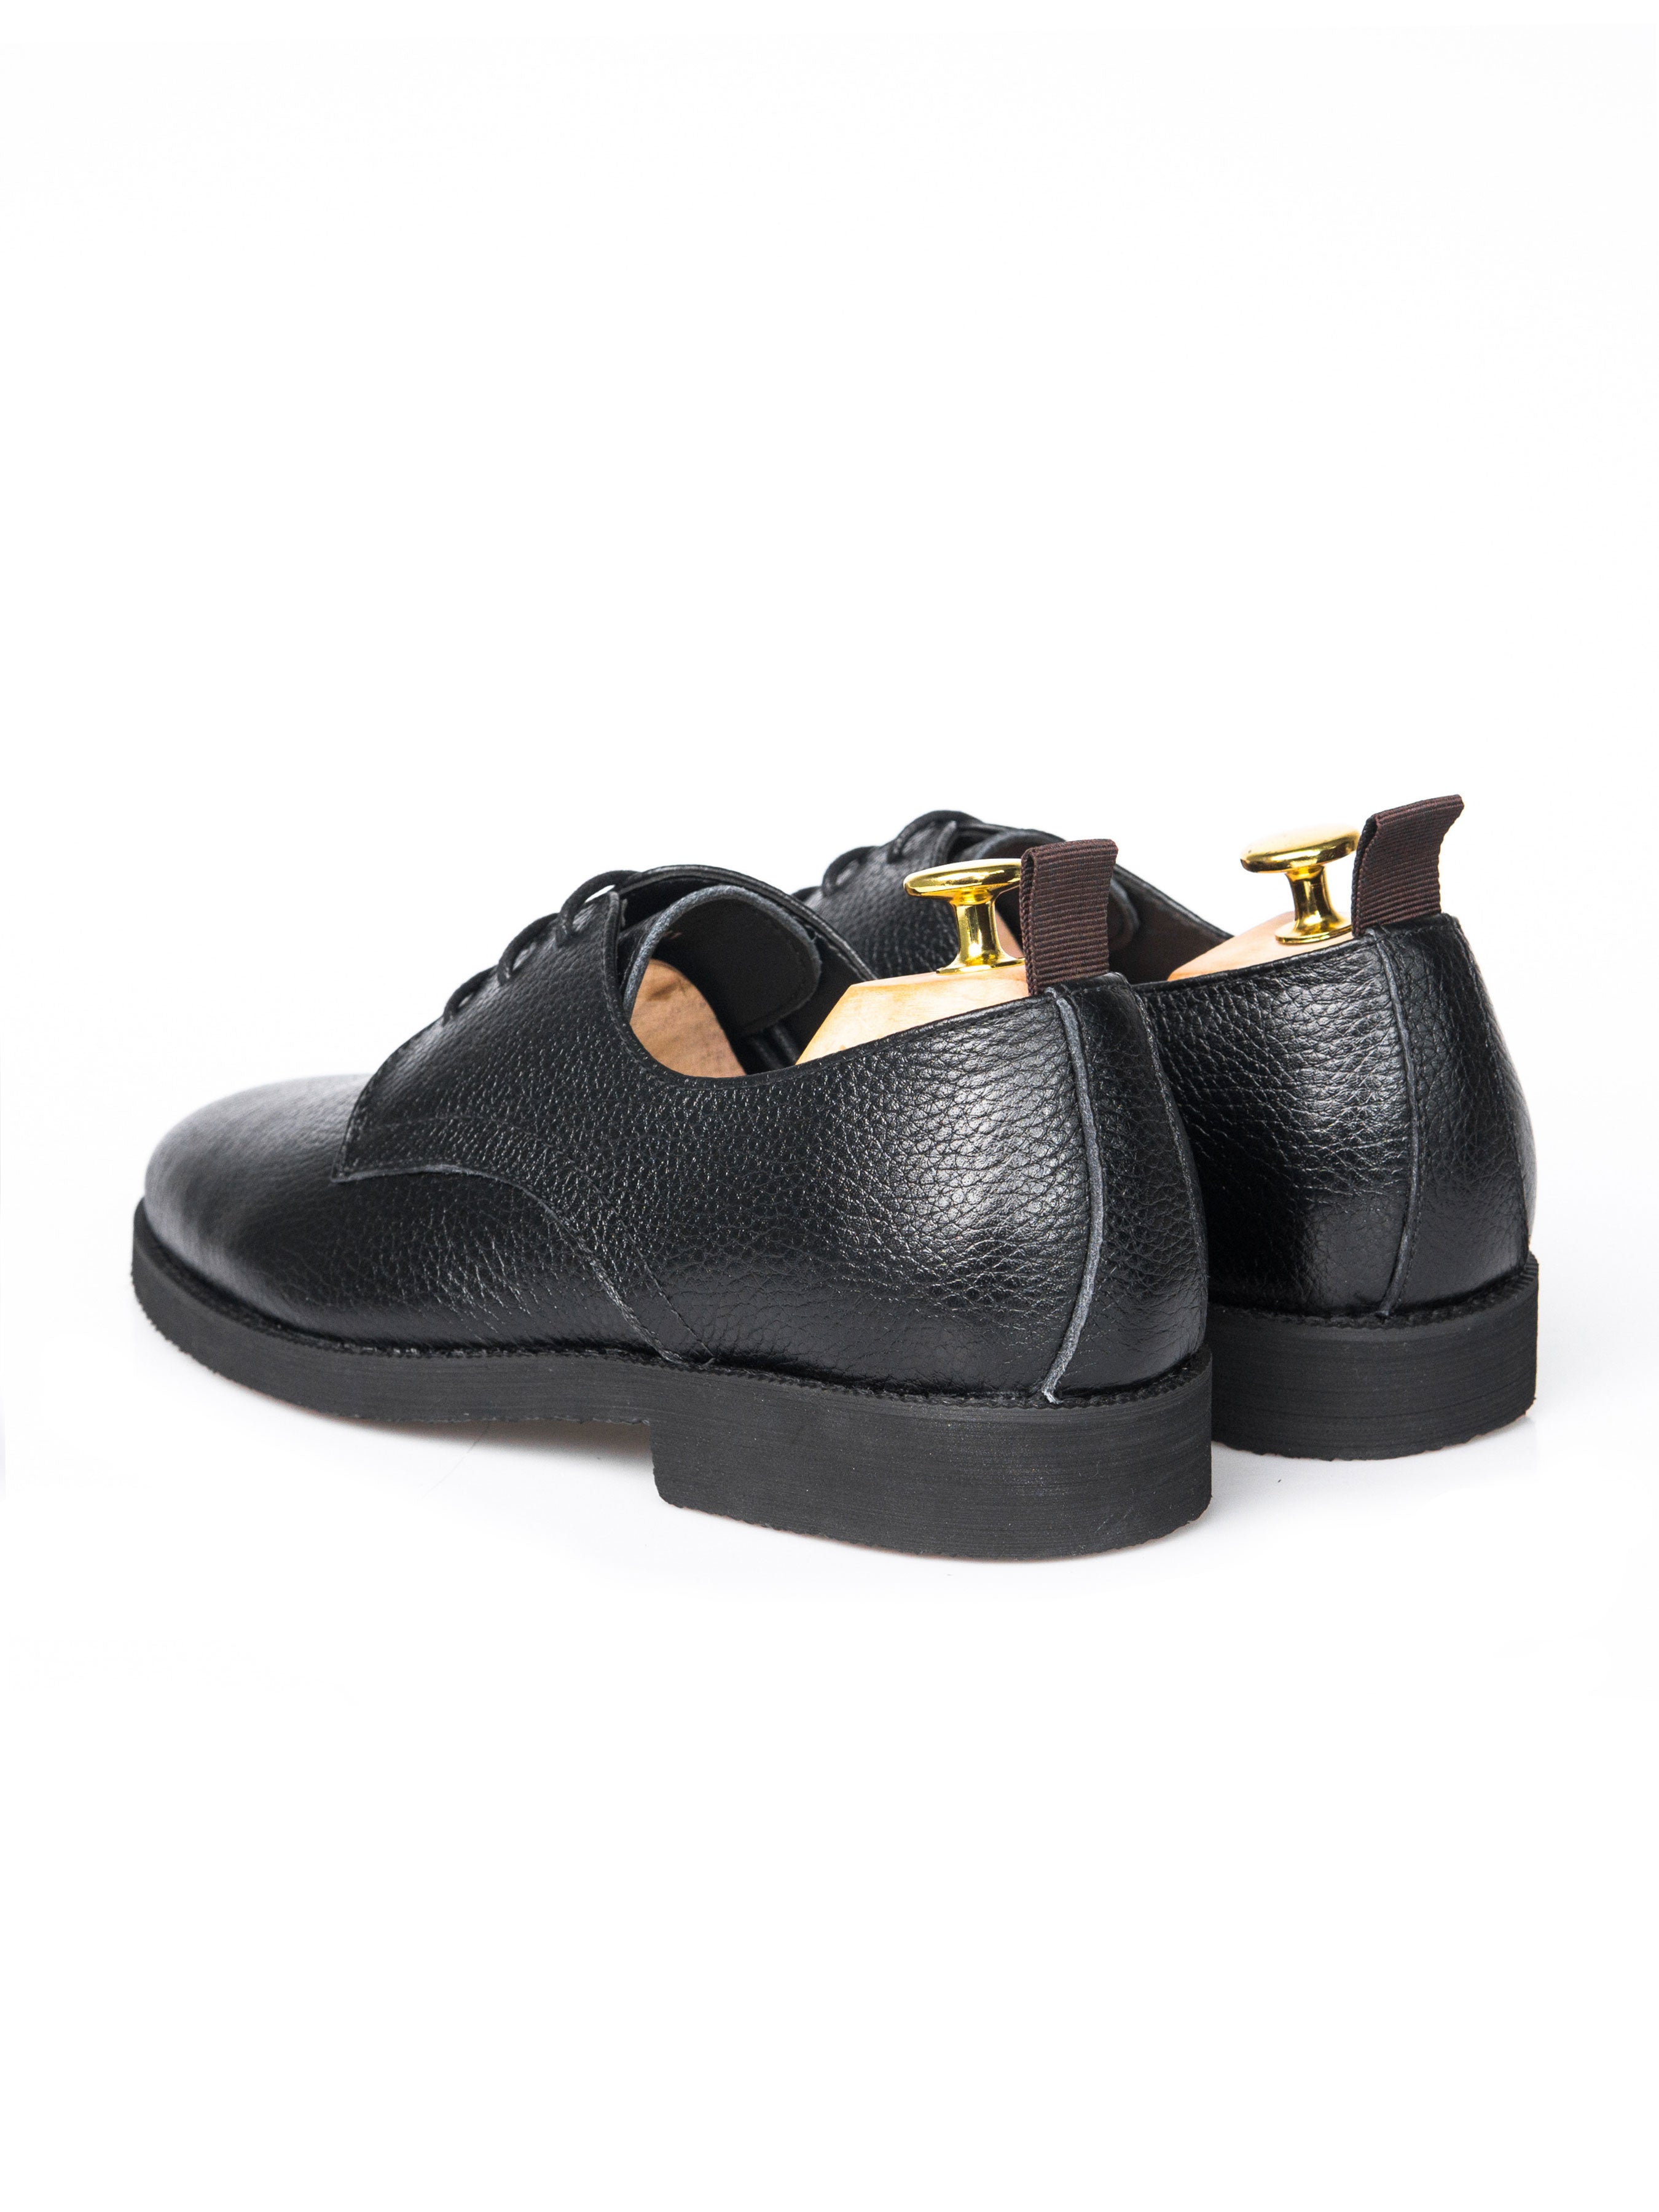 Derby Lace Up - Black Pebble Grain Leather (Crepe Sole) - Zeve Shoes